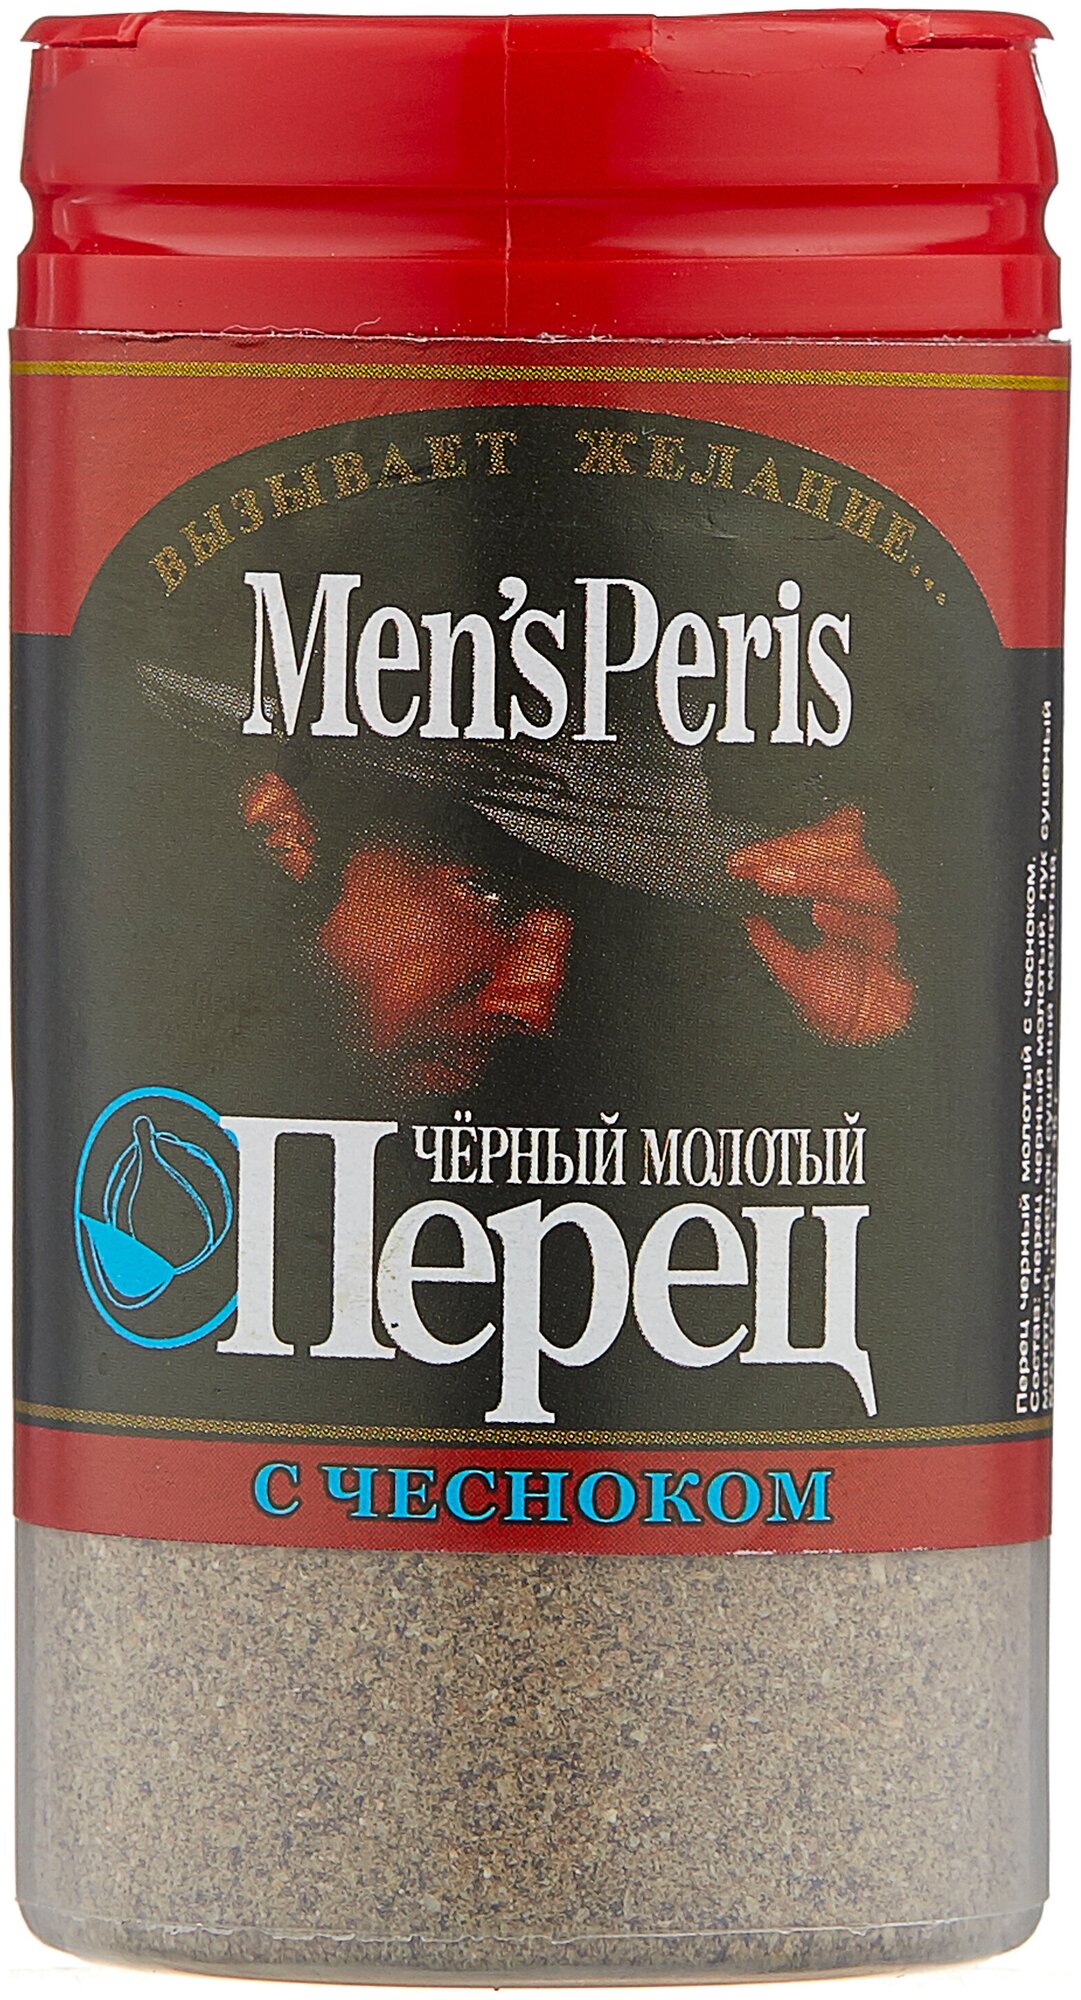 MensPeris Пряность Черный перец молотый с чесноком, 35 г.